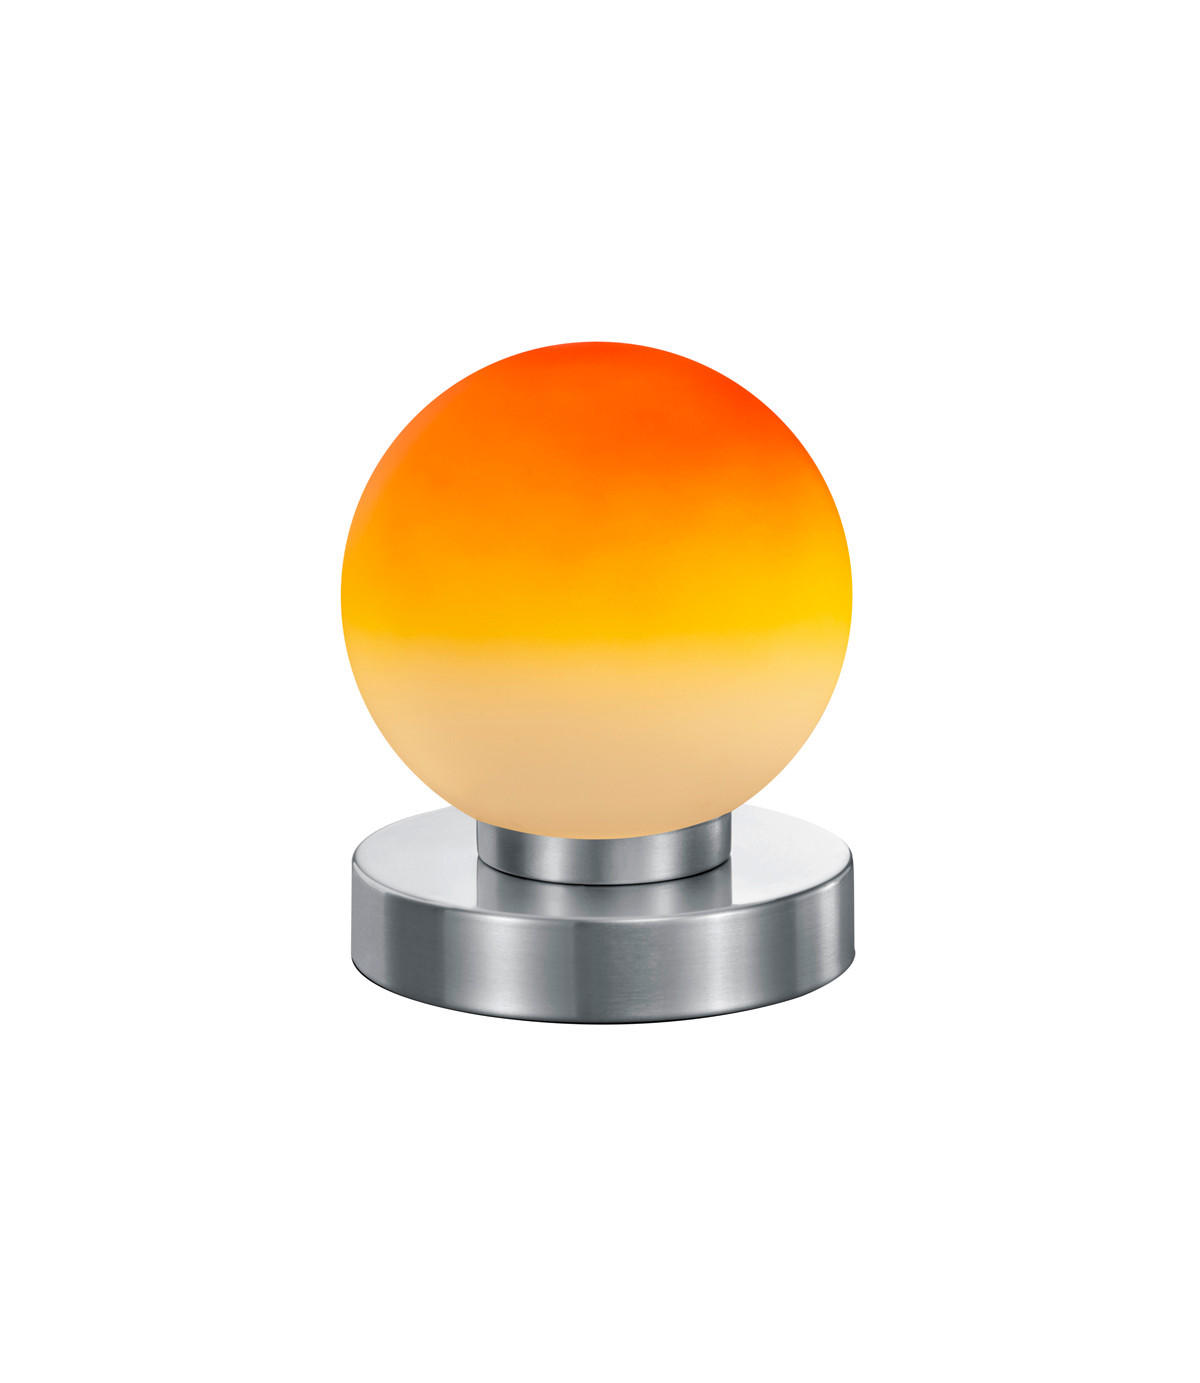 TISCHLEUCHTE Prinz II  - Orange/Nickelfarben, Basics, Glas/Metall (12/15cm)